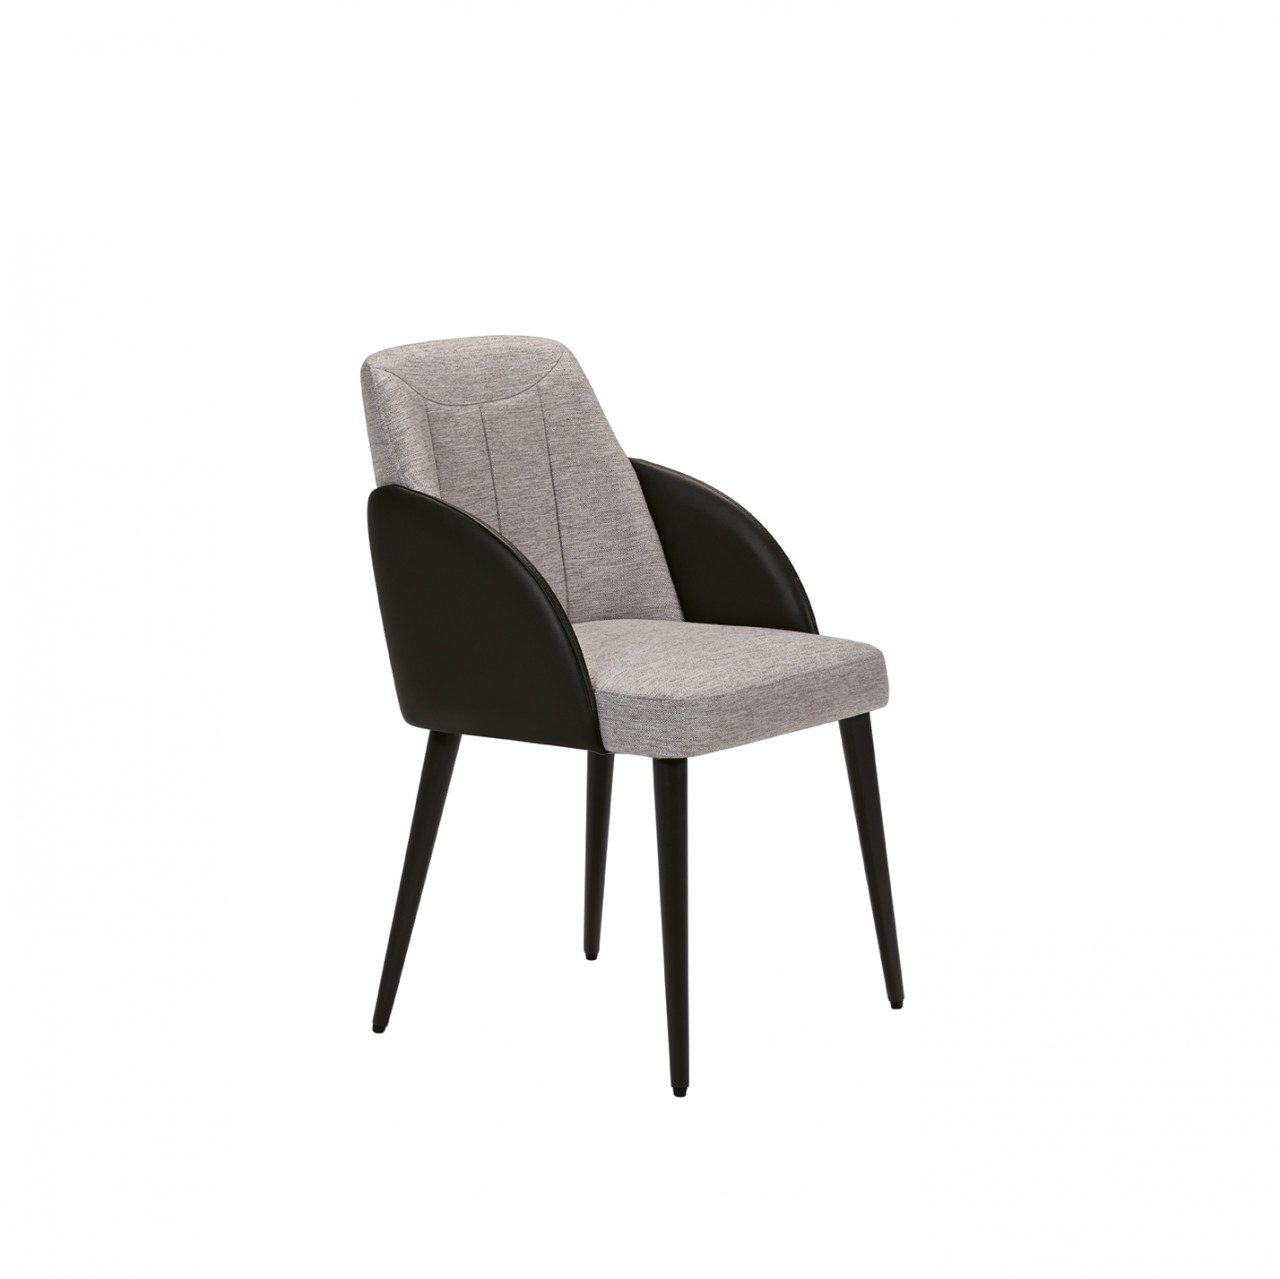 A elegância e o conforto unidos na cadeira Messina. O seu design moderno e discreto é a escolha perfeita para todos os tipos de espaços.